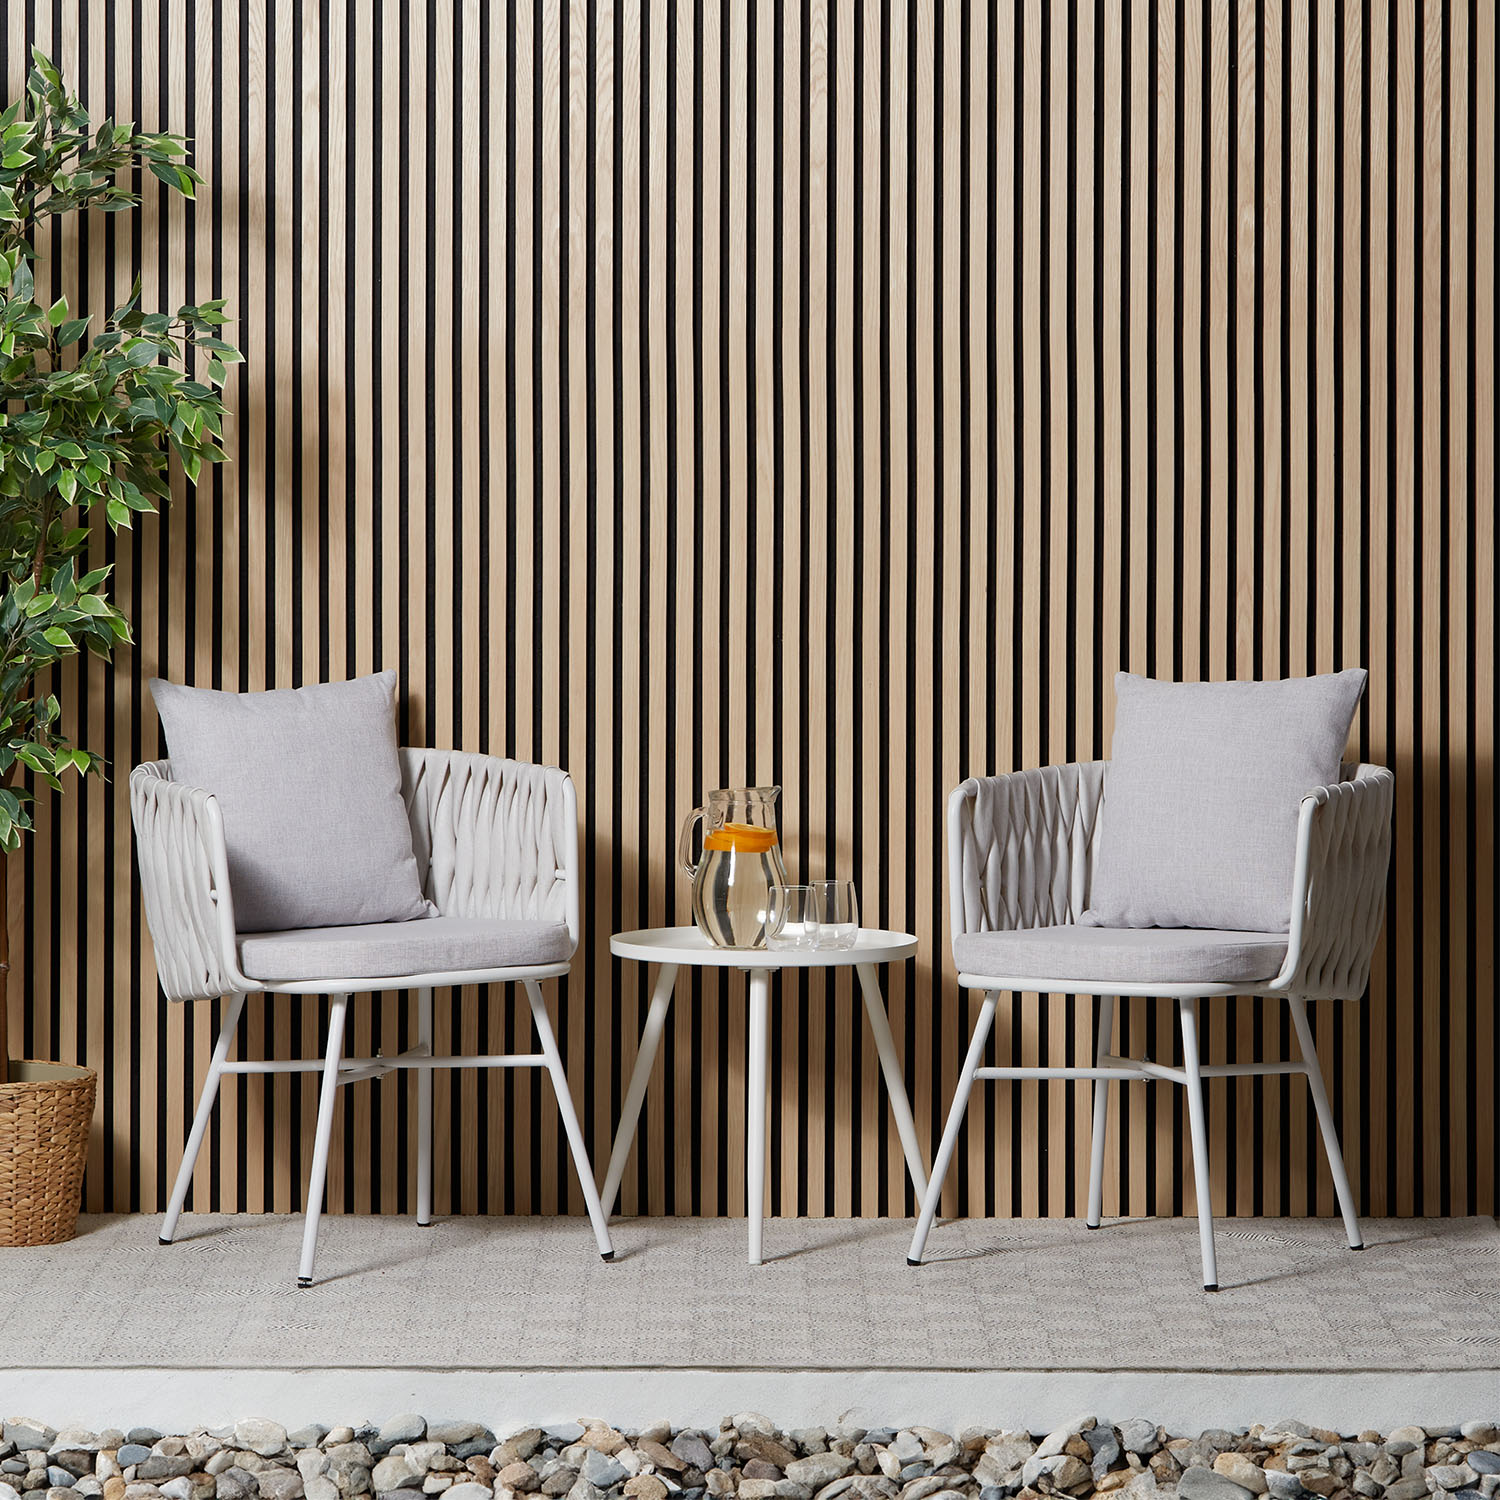 Salon de jardin Ensemble table et 2 chaises de jardin rotin blanc Meubles de détente extérieur Mobilier de jardin